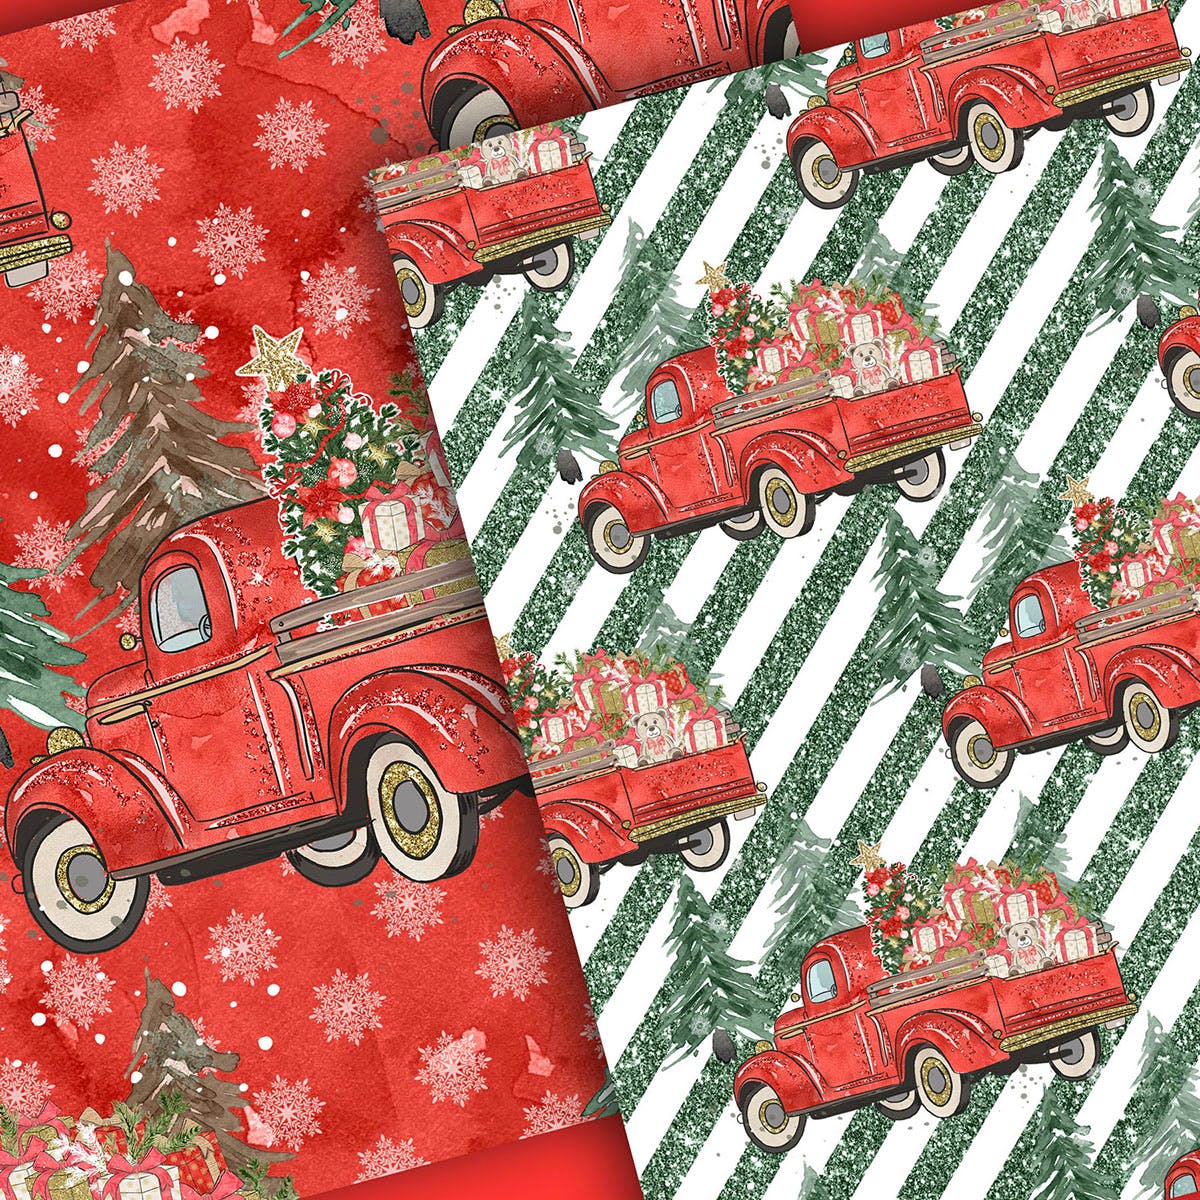 圣诞节礼物卡车手绘图案数码纸张背景素材 Christmas Car digital paper pack插图(1)